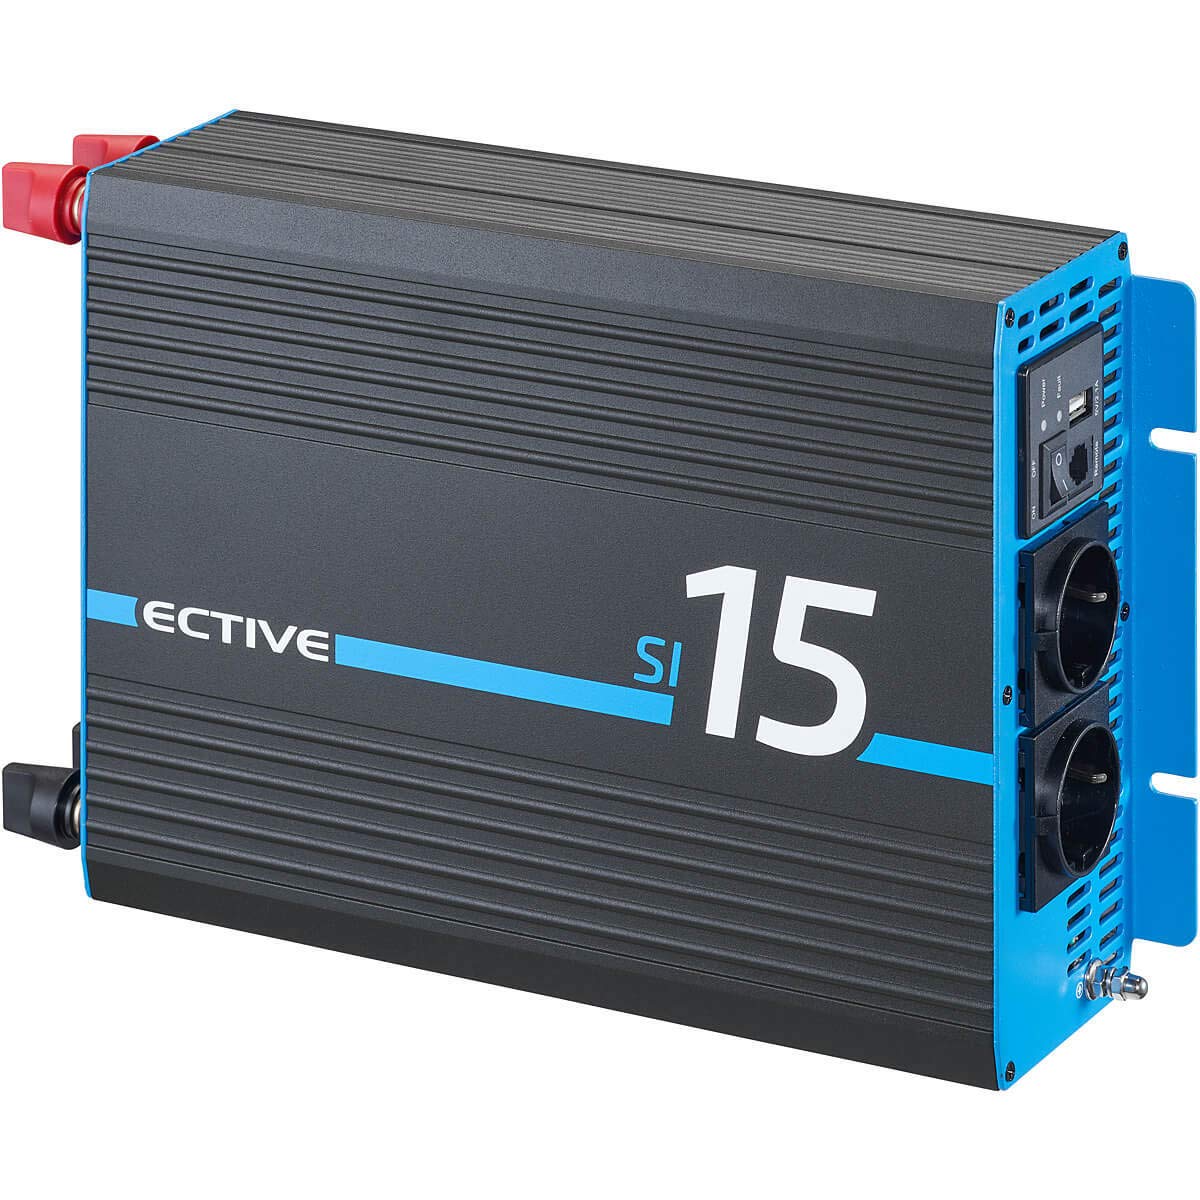 ECTIVE Reiner Sinsus Wechselrichter SI15-1500W, 12V auf 230V, USB, Überlastschutz, Überhitzungsschutz, Aluminiumgehäuse - DC/AC Spannungswandler, Umwandler, Stromwandler für Haushaltsgeräten von ECTIVE